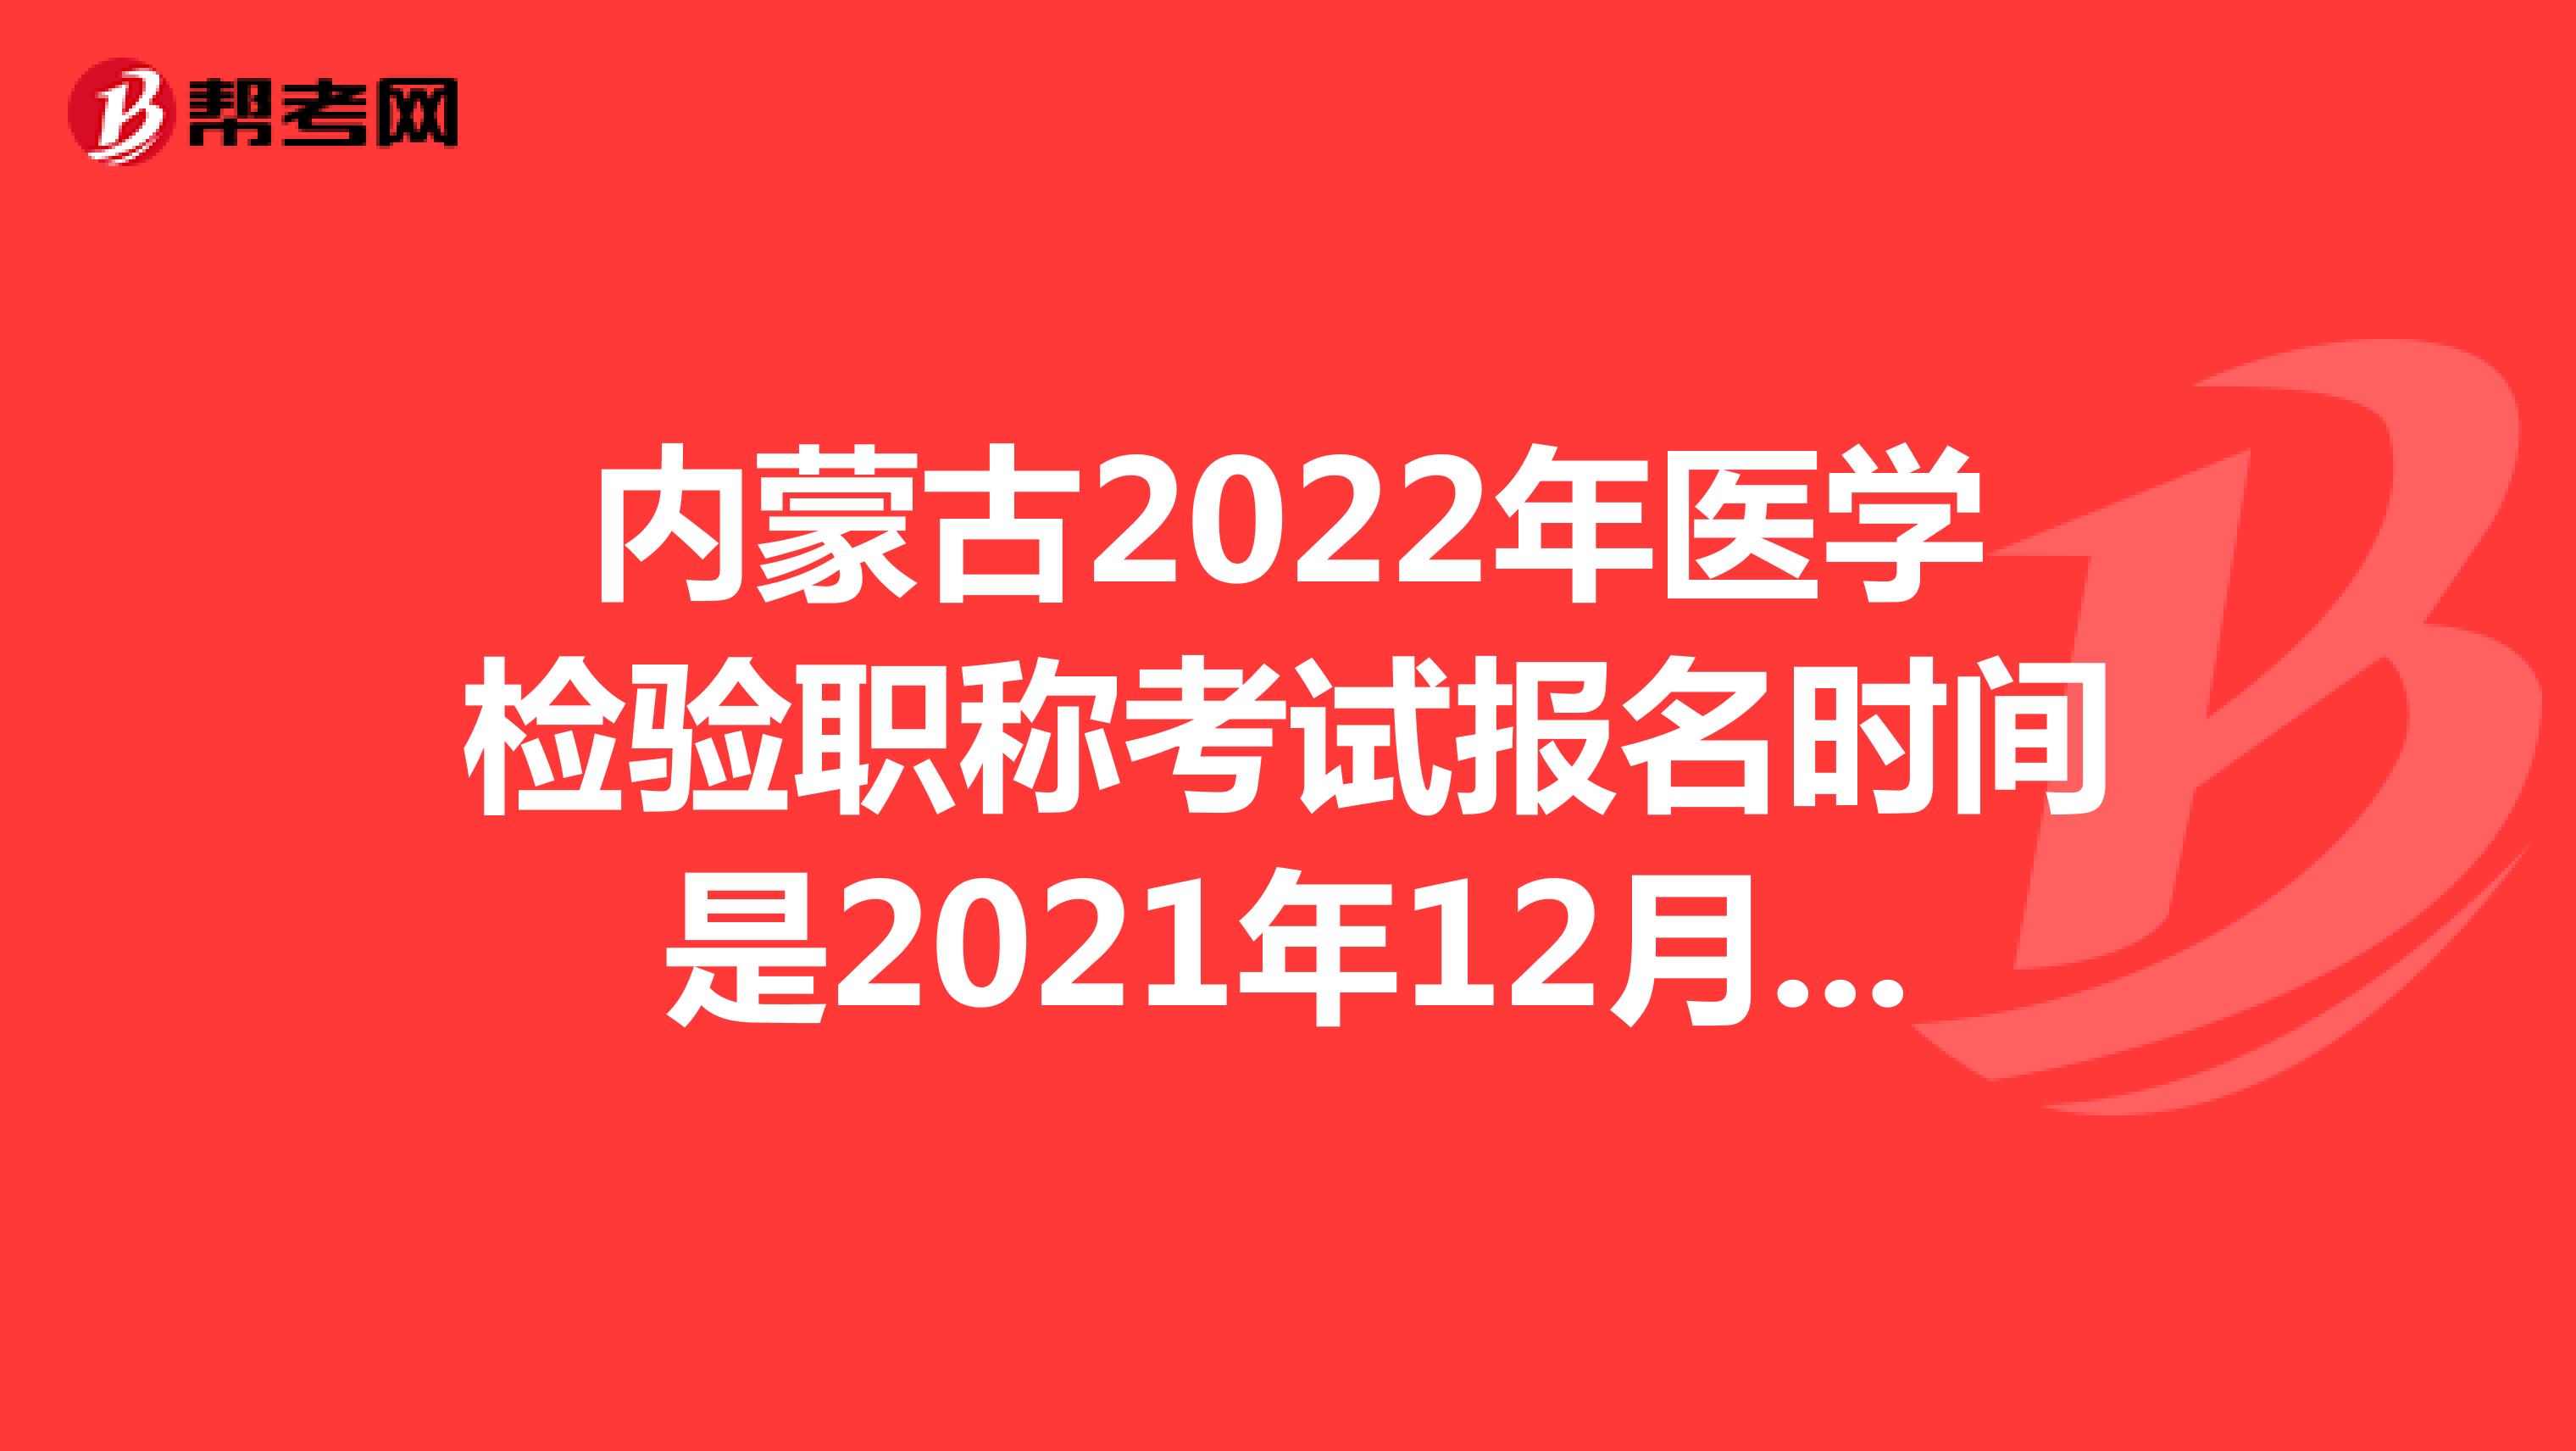 内蒙古2022年医学检验职称考试报名时间是2021年12月20-30日